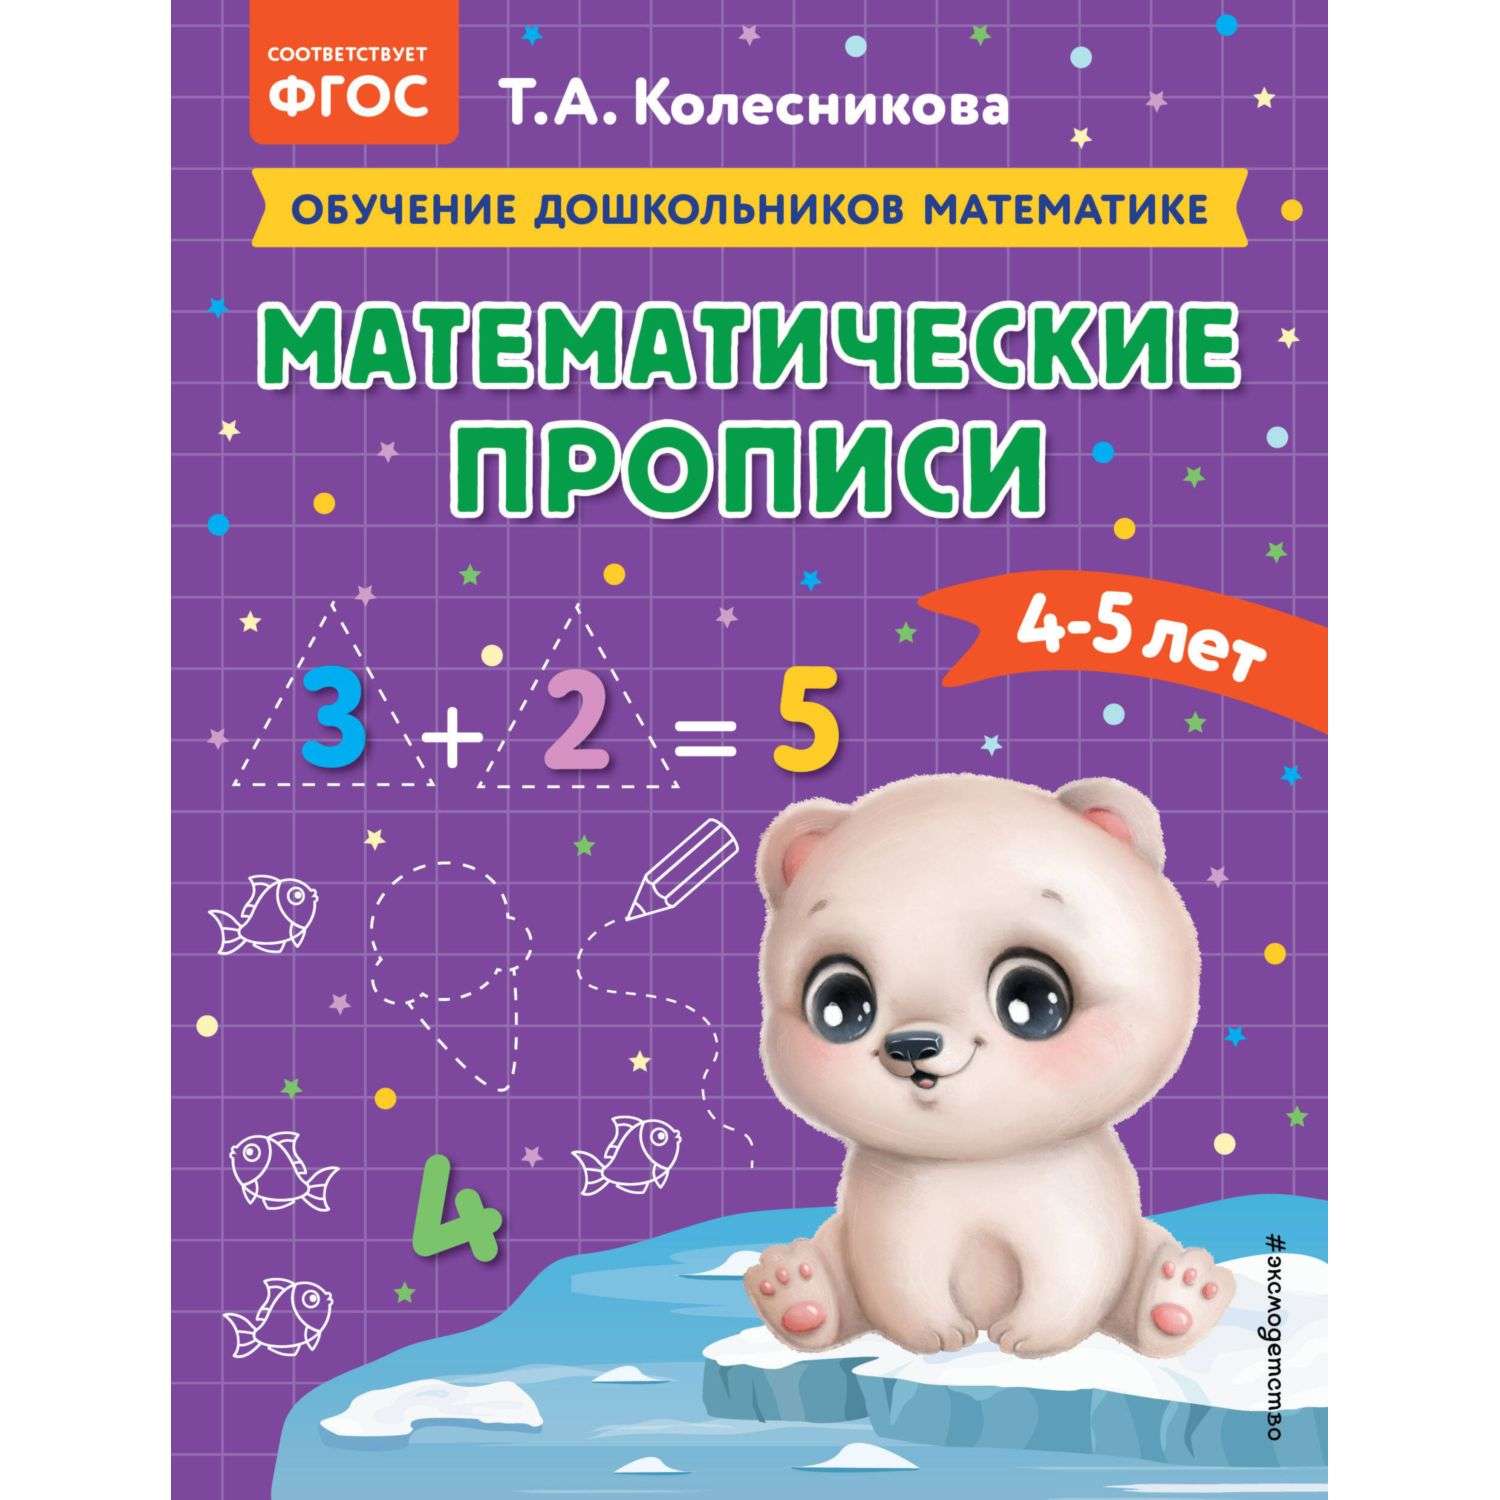 Книга Математические прописи для детей 4-5лет - фото 1